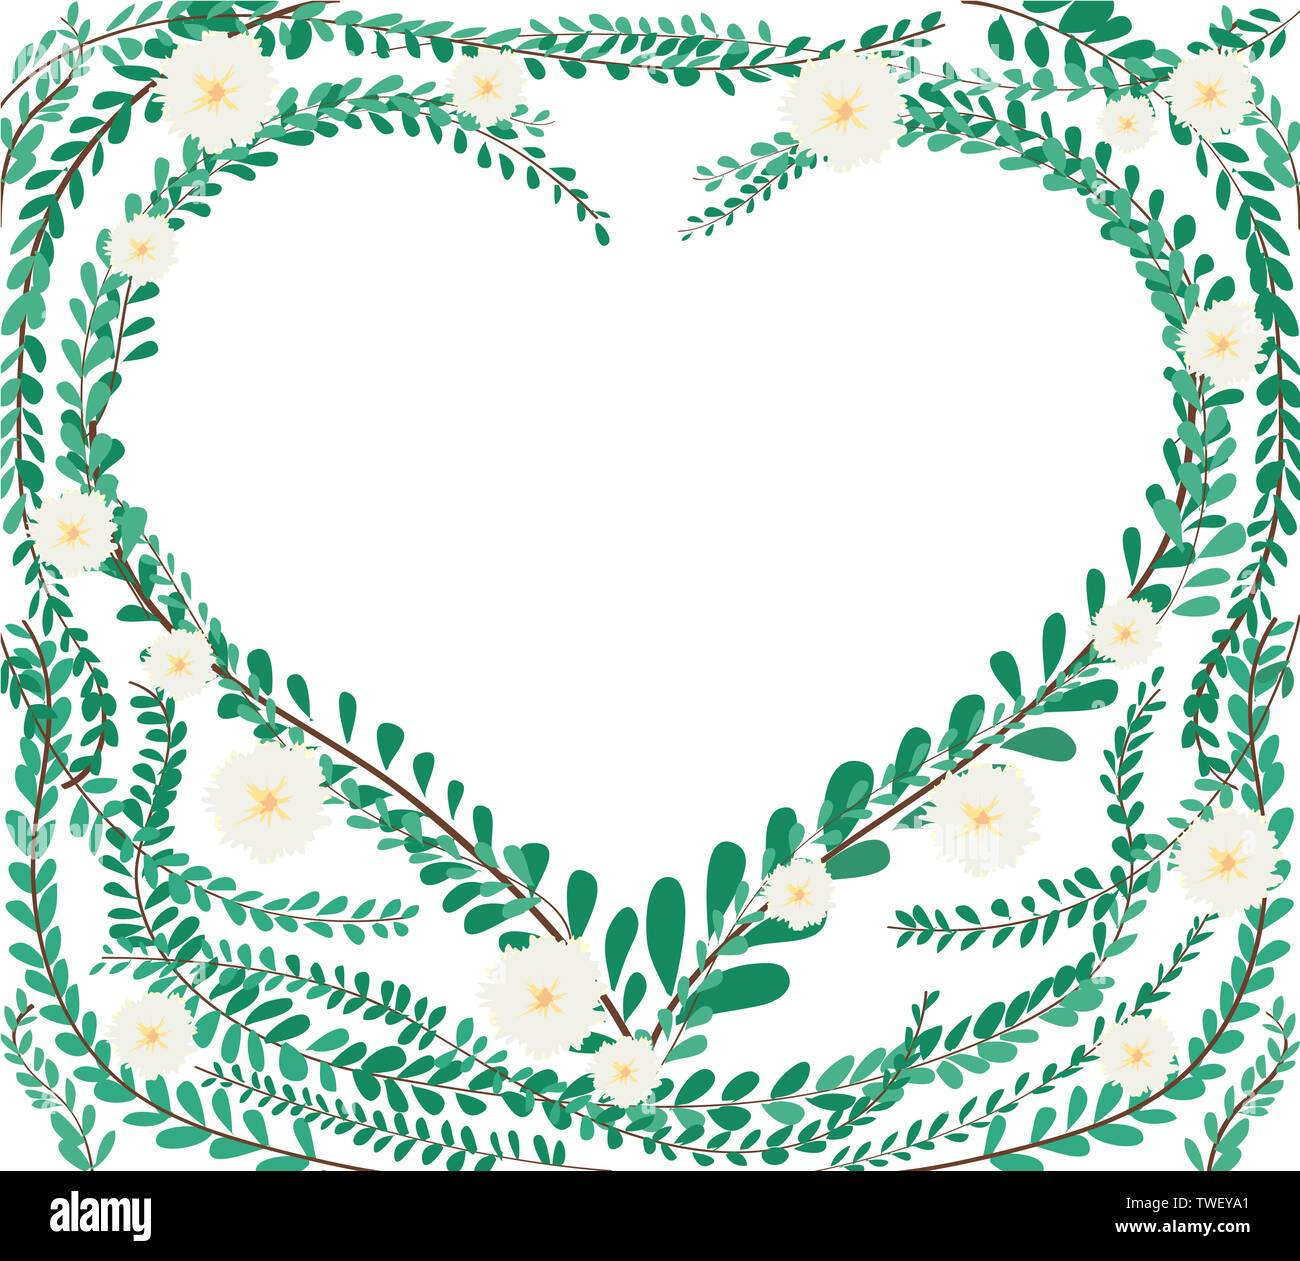 Herzform in grün Pastell treibt Mantel Tasten, Mexikanische daisy Hintergrund EPS 10. Stockfoto